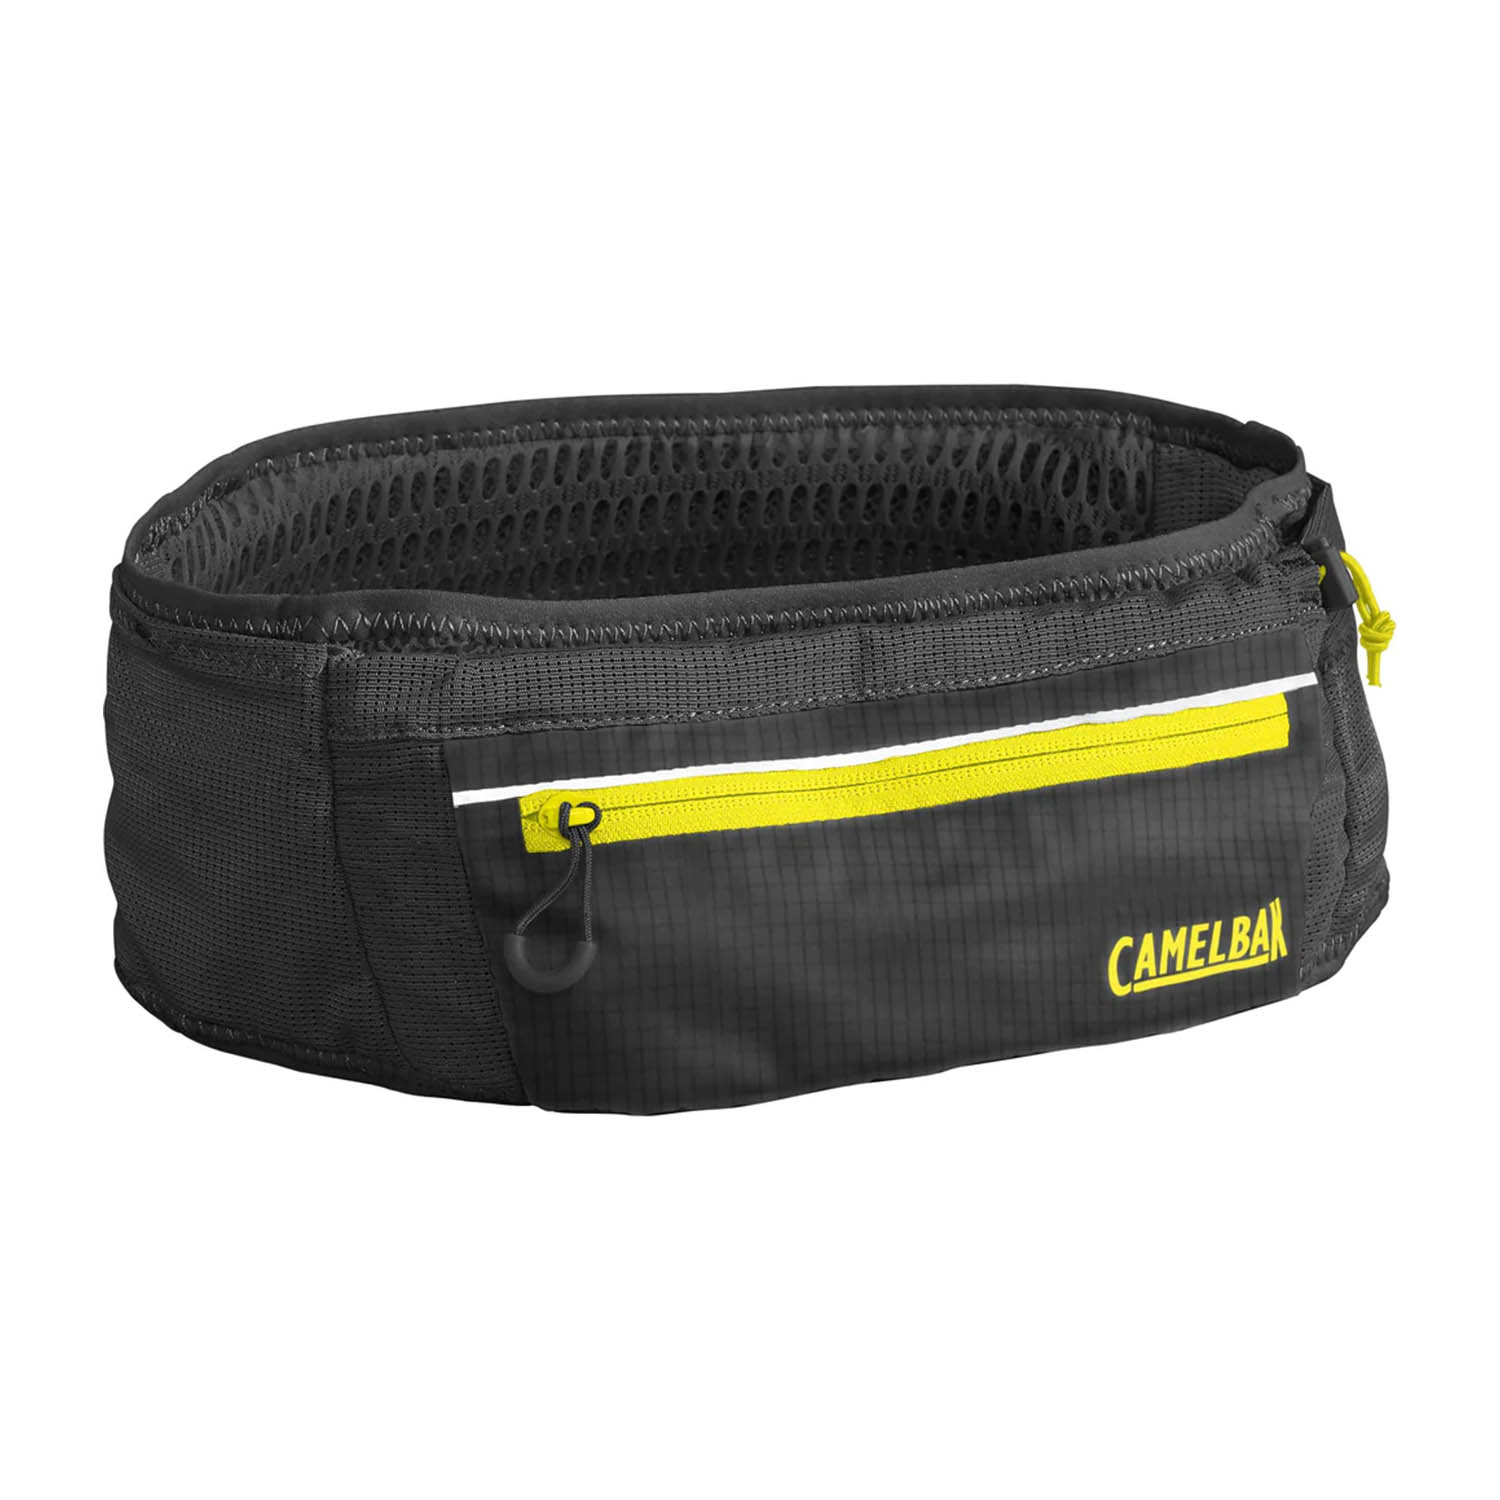 Camelbak Ultra Cintura - Black/Safety Yellow